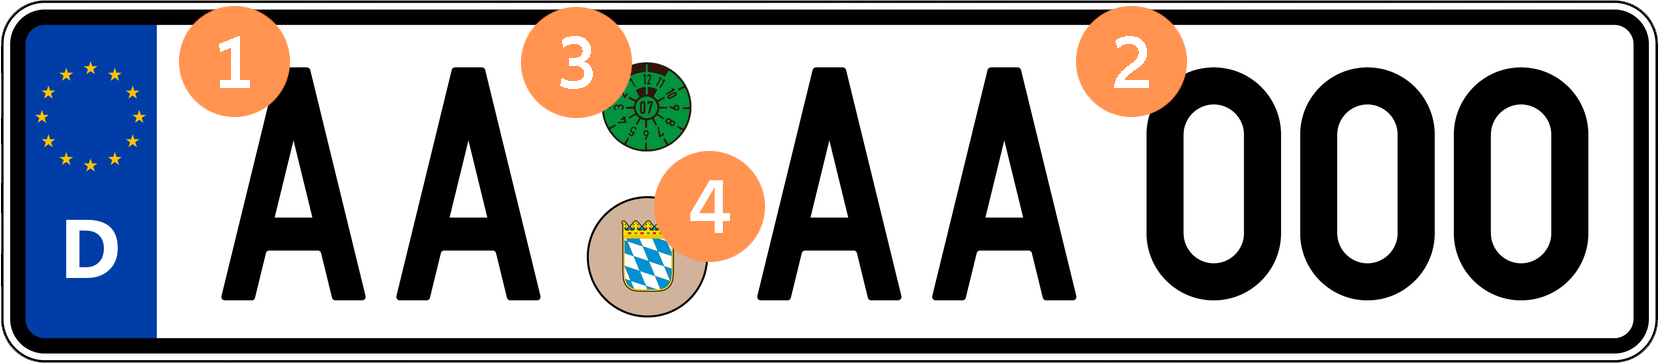 Kfz-Kennzeichen mit grüner TÜV-Plakette und Stempelplakette des Freistaates Bayern